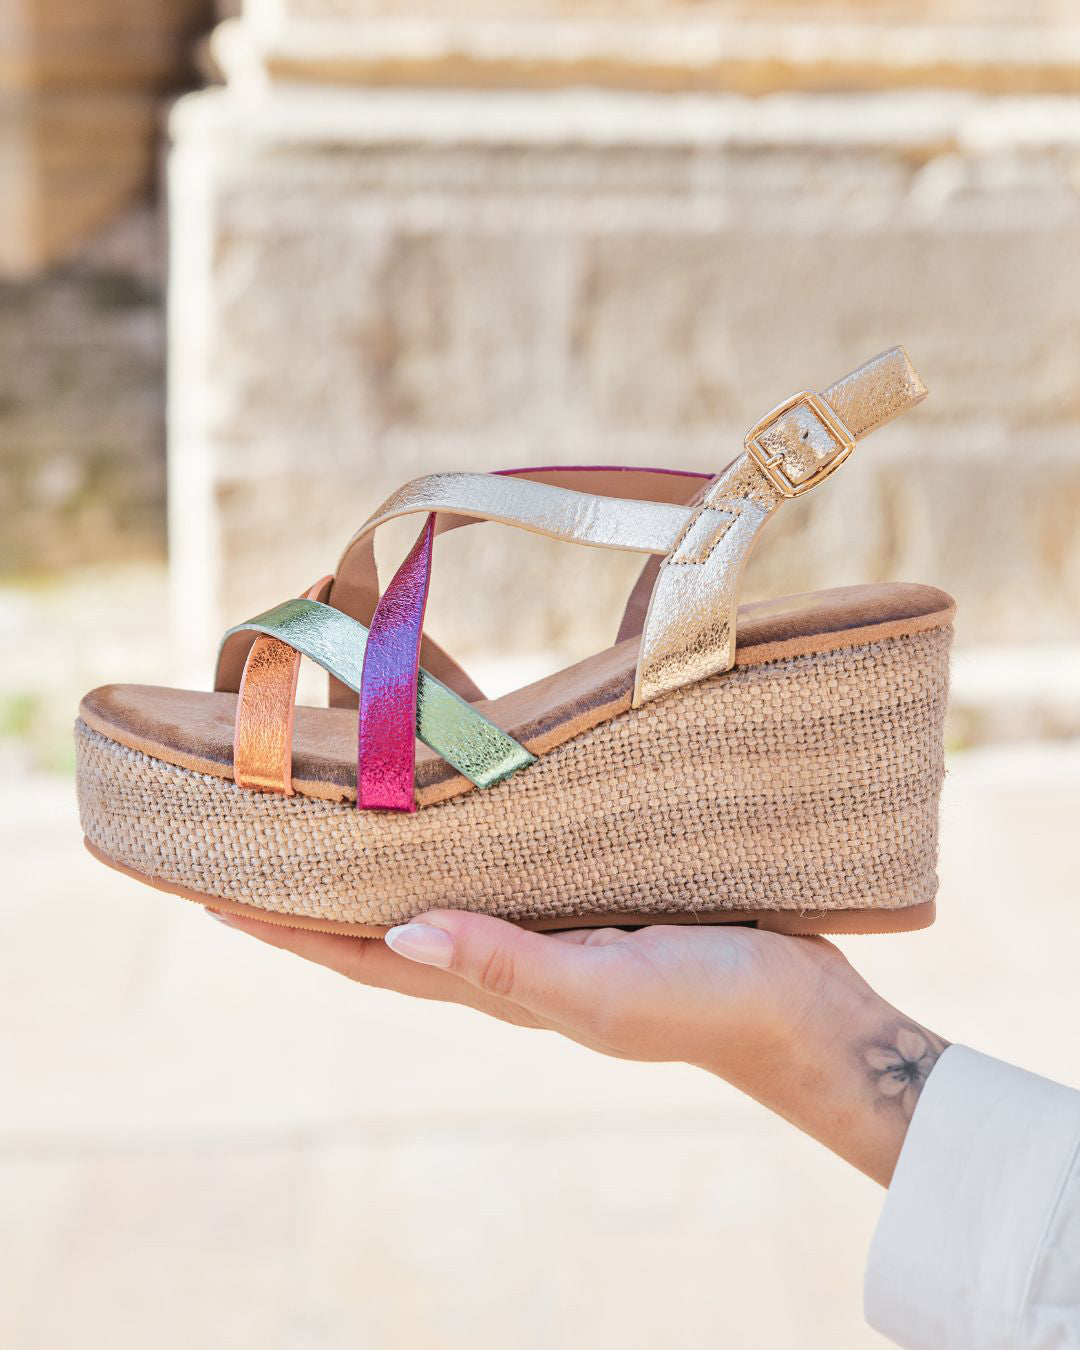 Sandale femme compensée multicolore - Lauren - Casualmode.fr